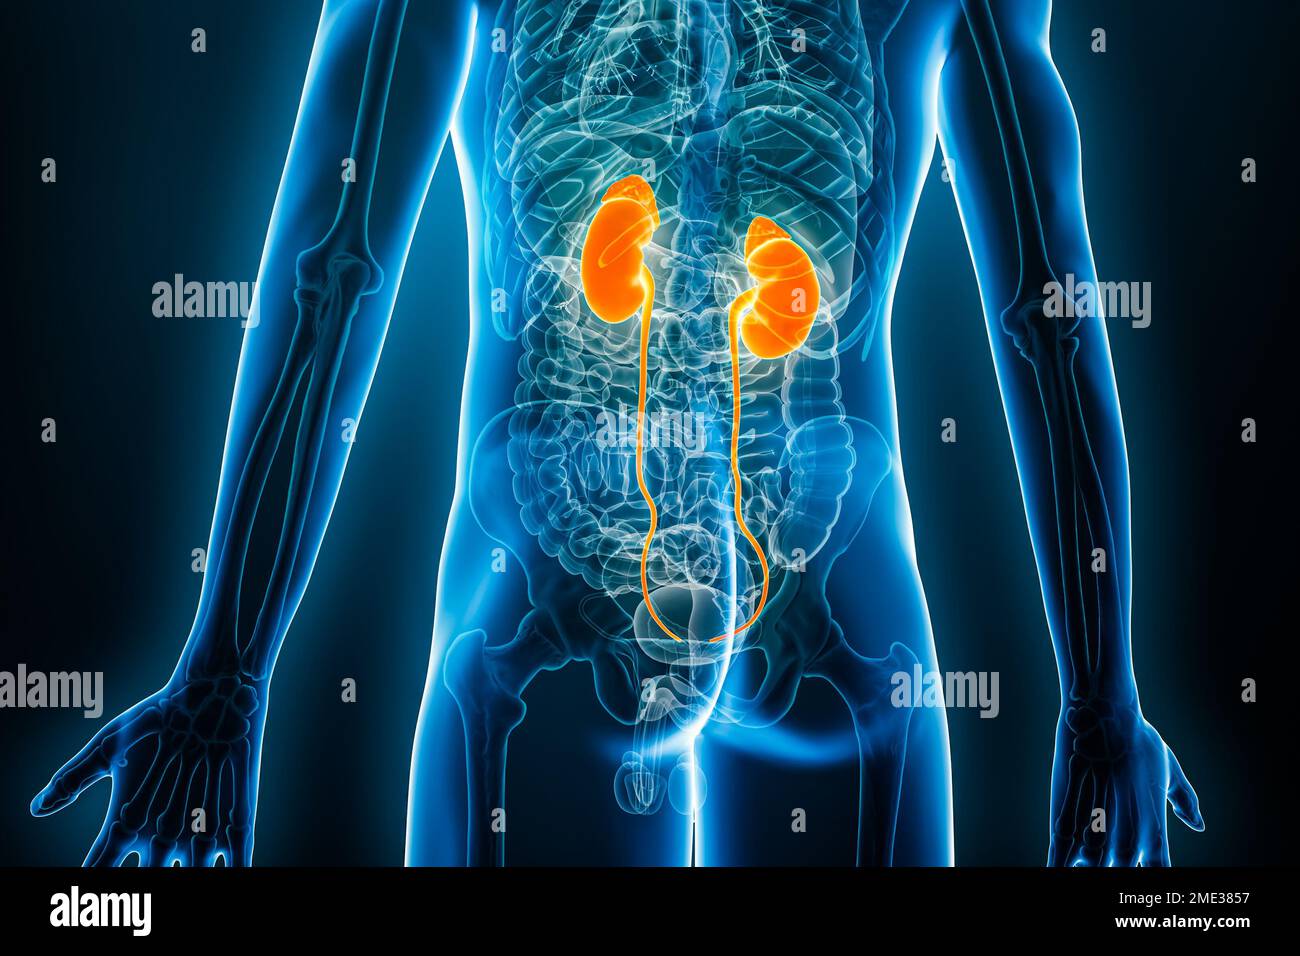 Röntgen-posteriore oder -rückwärtige Ansicht von Nieren und Harnleiter 3D-Darstellung mit männlichen Körperkonturen. Menschliche Anatomie, Nierensystem, Medizin, Biologie, sc Stockfoto